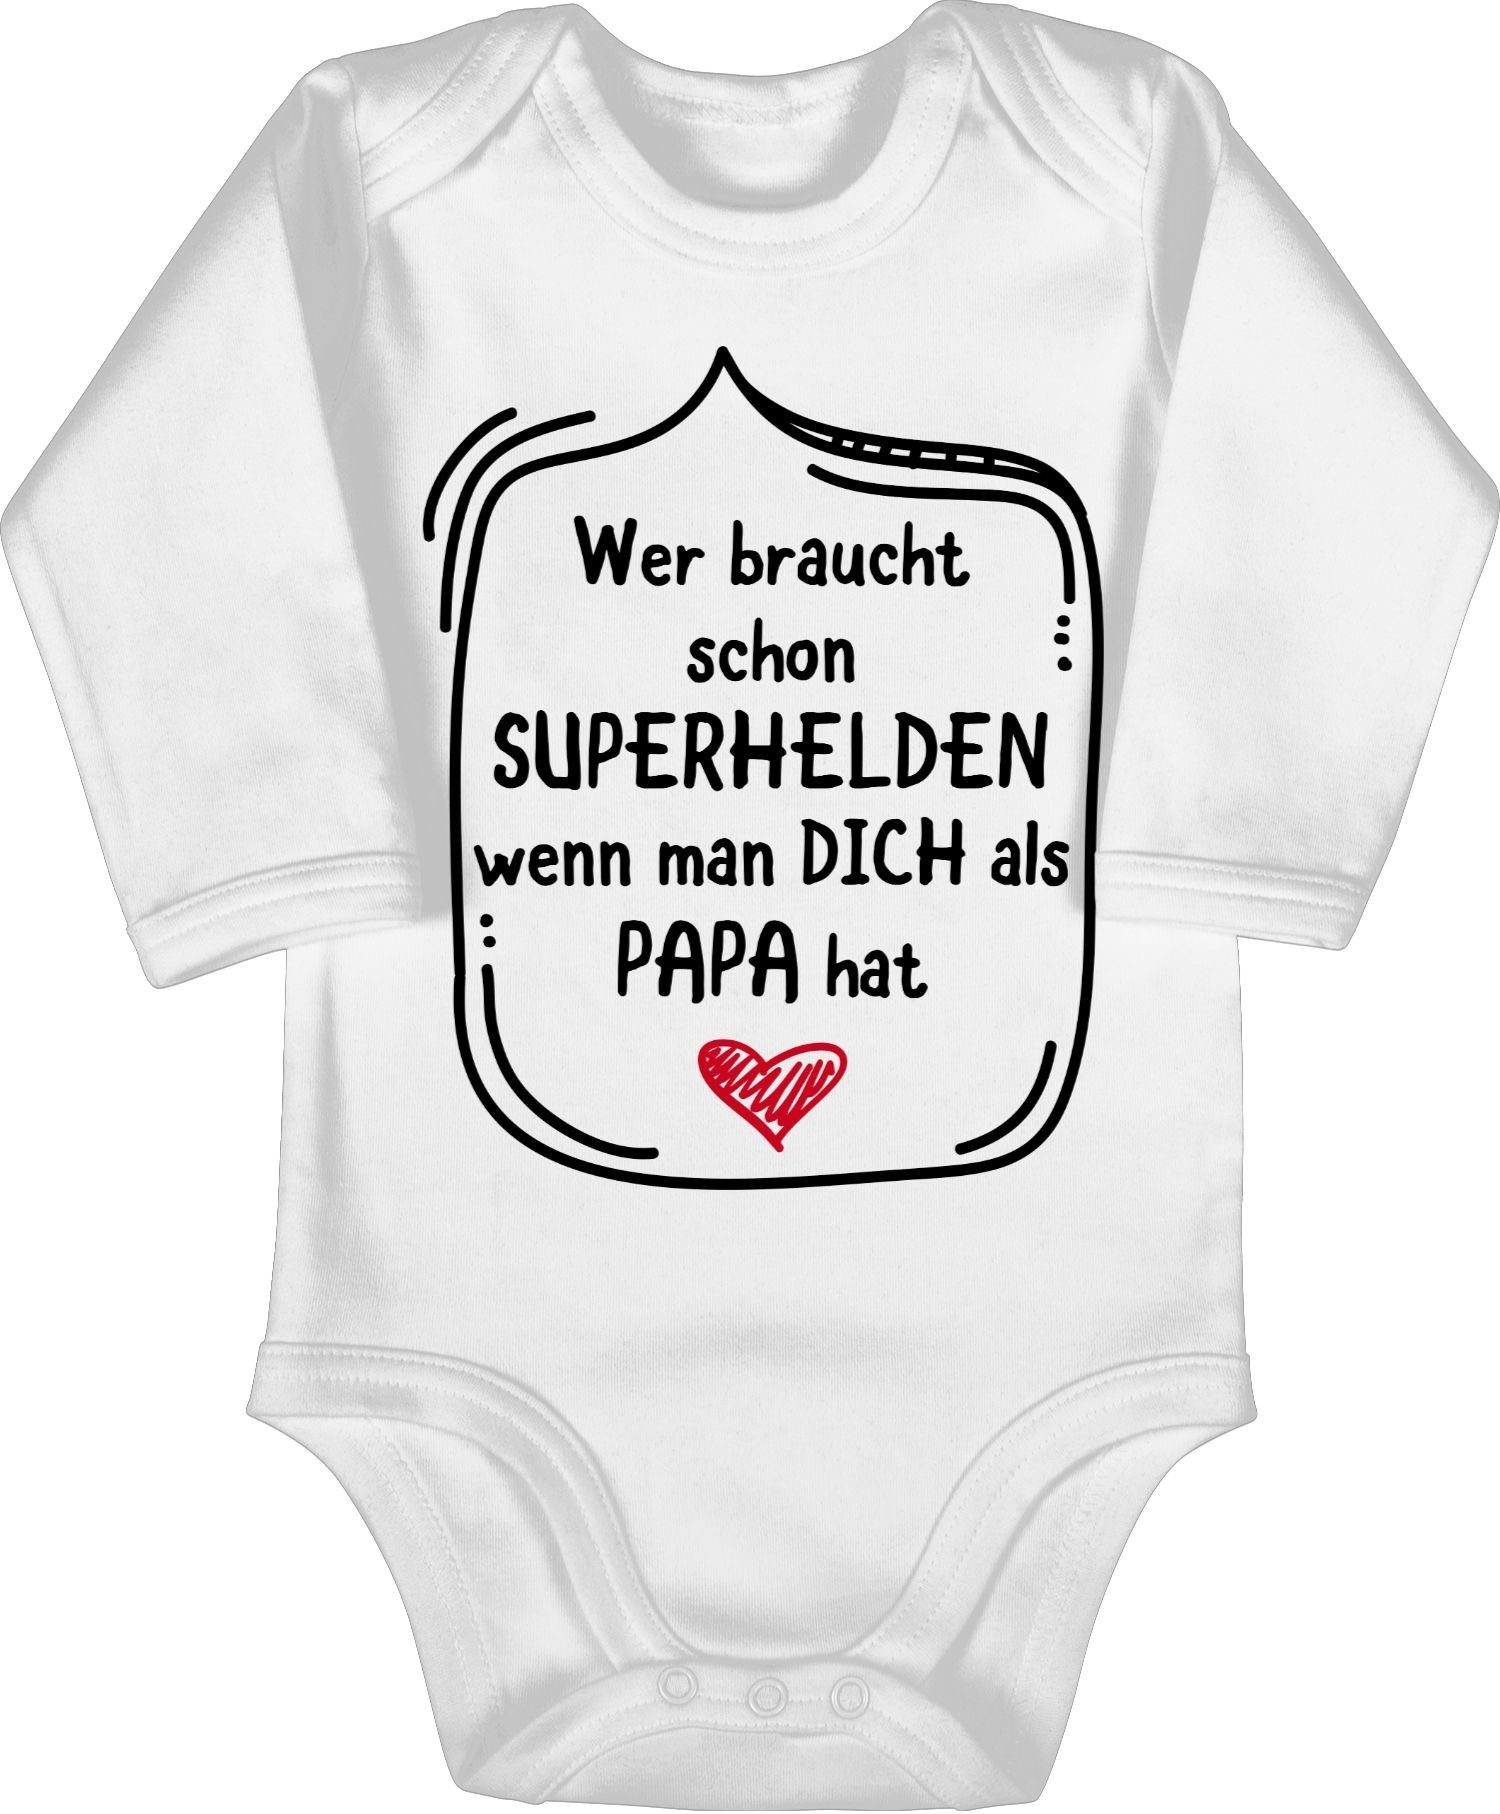 man braucht Weiß schon Superhelden Vatertag Shirtracer Geschenk Wer 1 als Shirtbody wenn dich Baby Papa hat